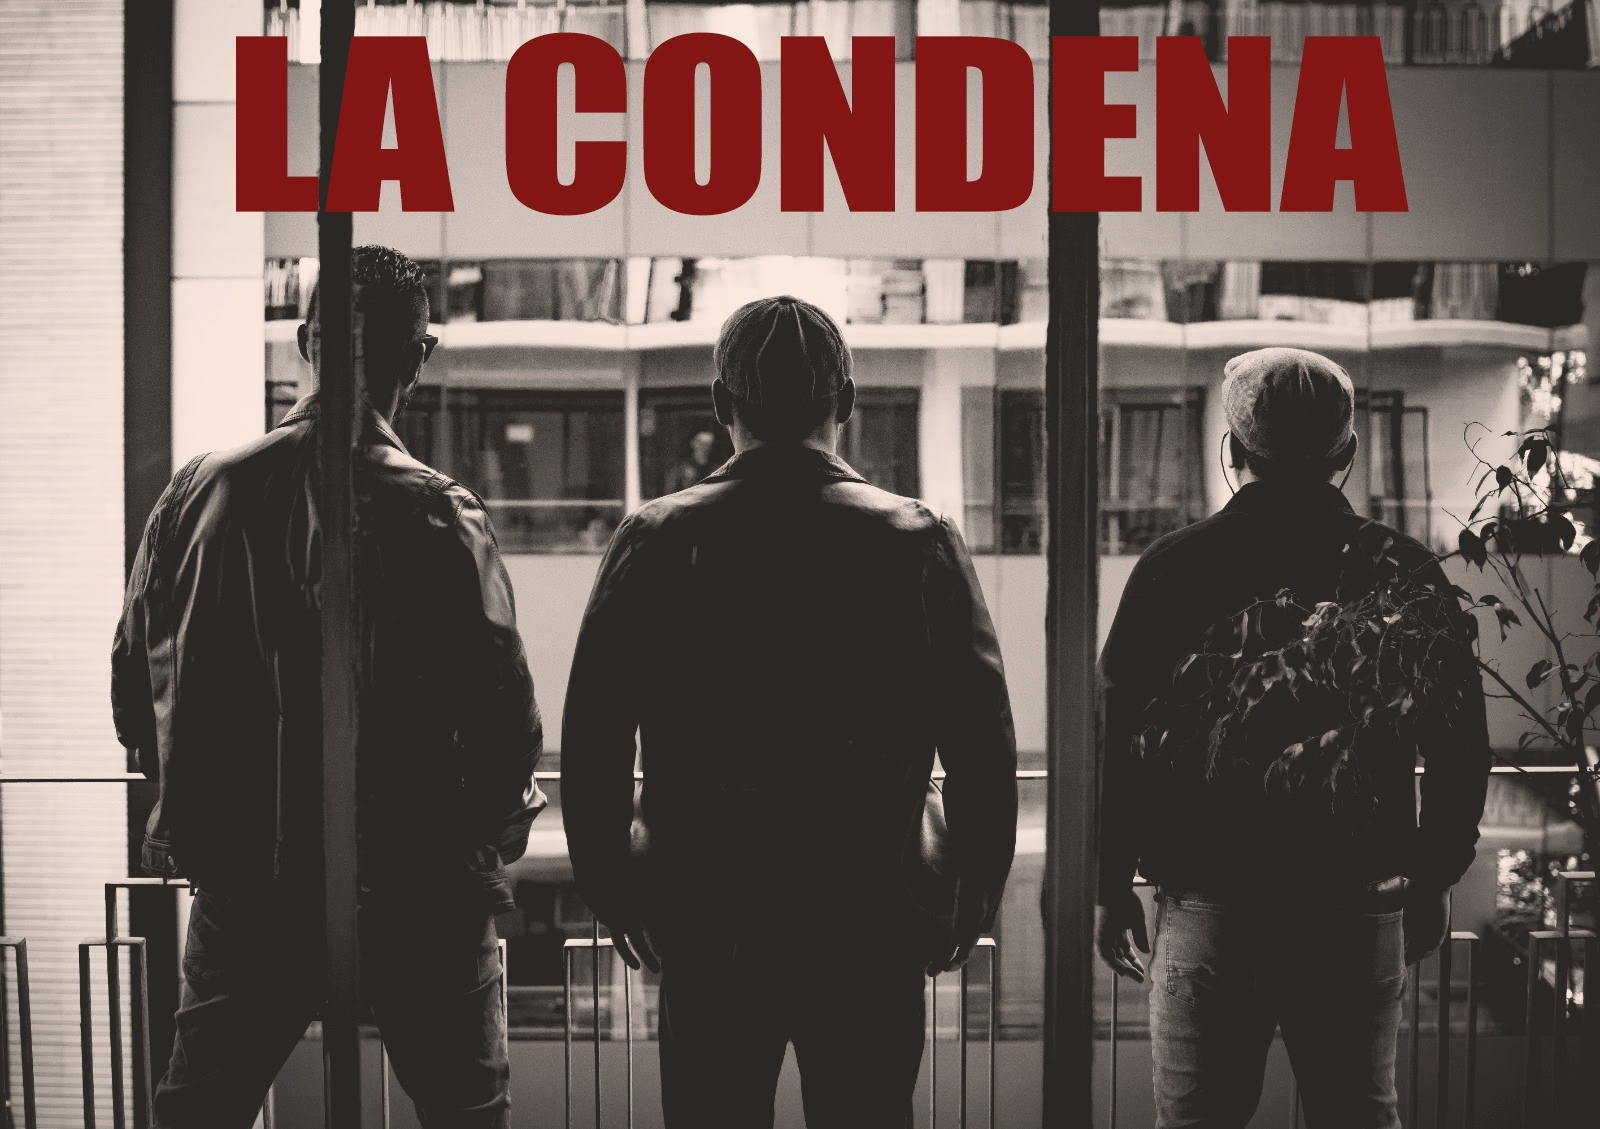 Ciudad Z estrena videoclip de su nuevo single “La Condena”